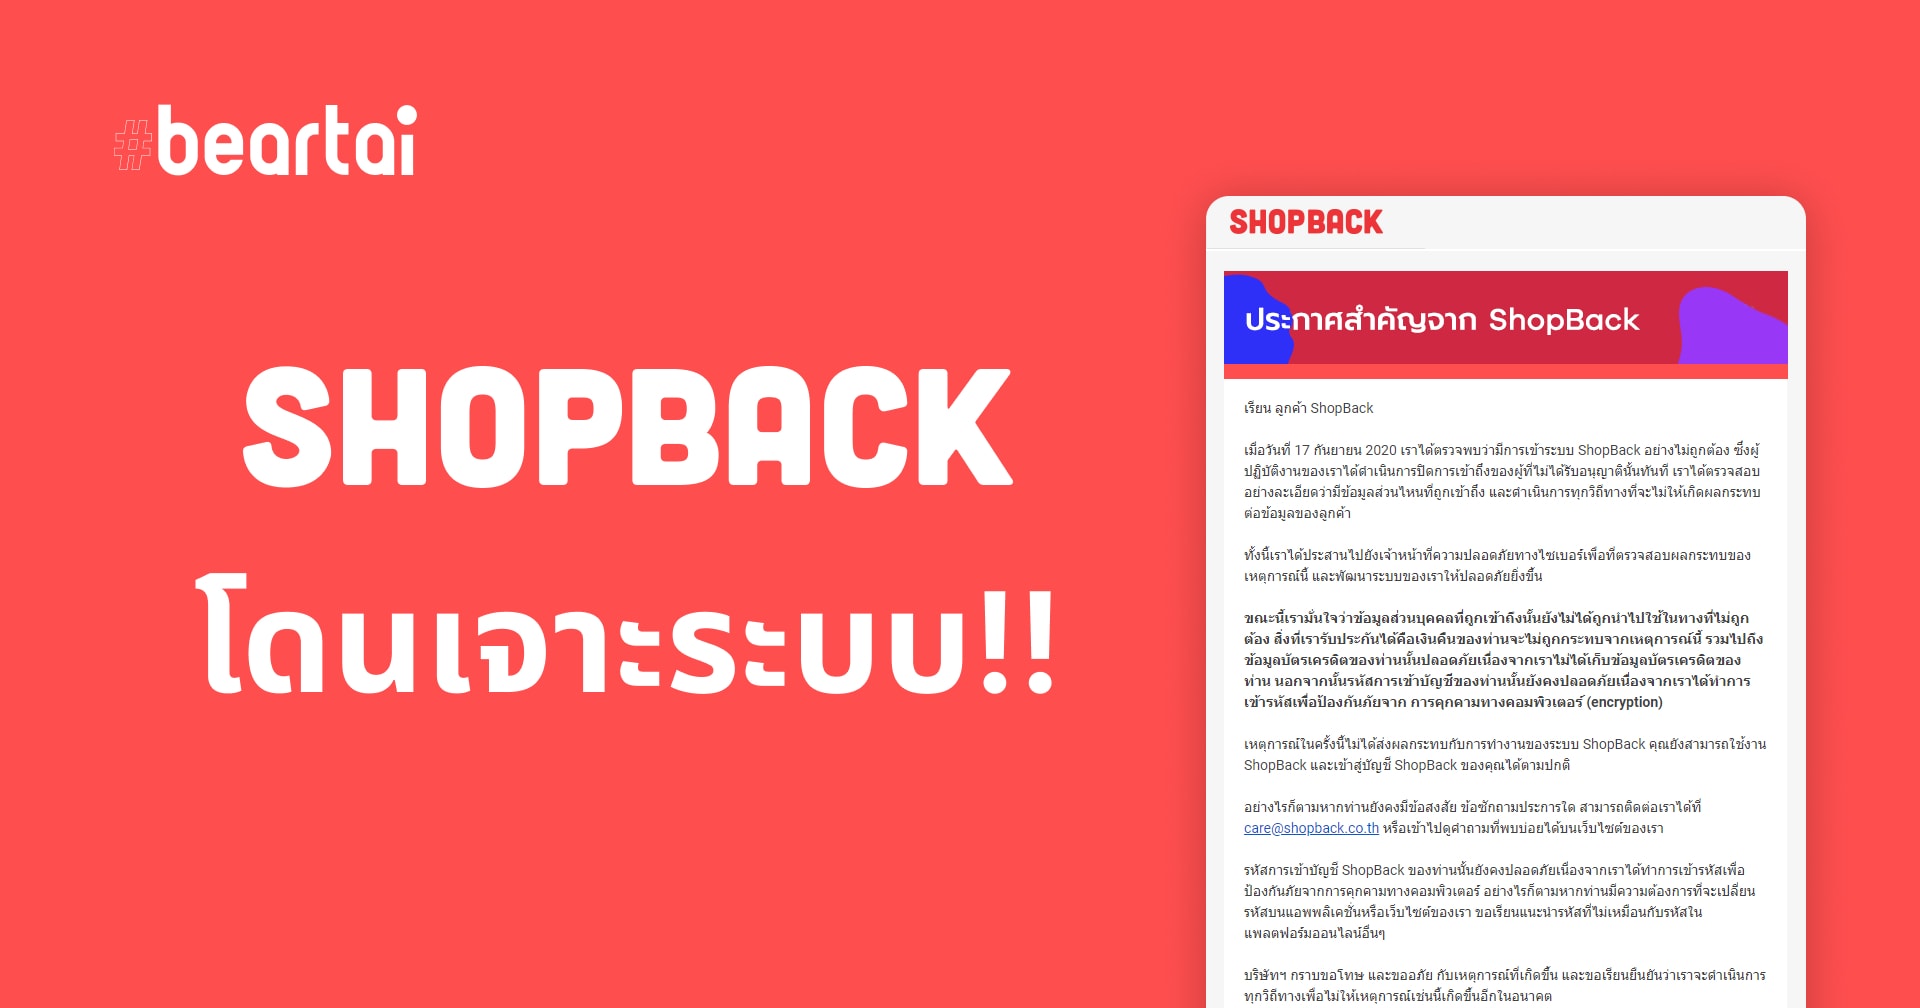 ShopBack โดนเจาะระบบ! แต่แถลงไม่กระทบเงินคืน ตอนนี้ใช้งานได้ปกติแล้ว